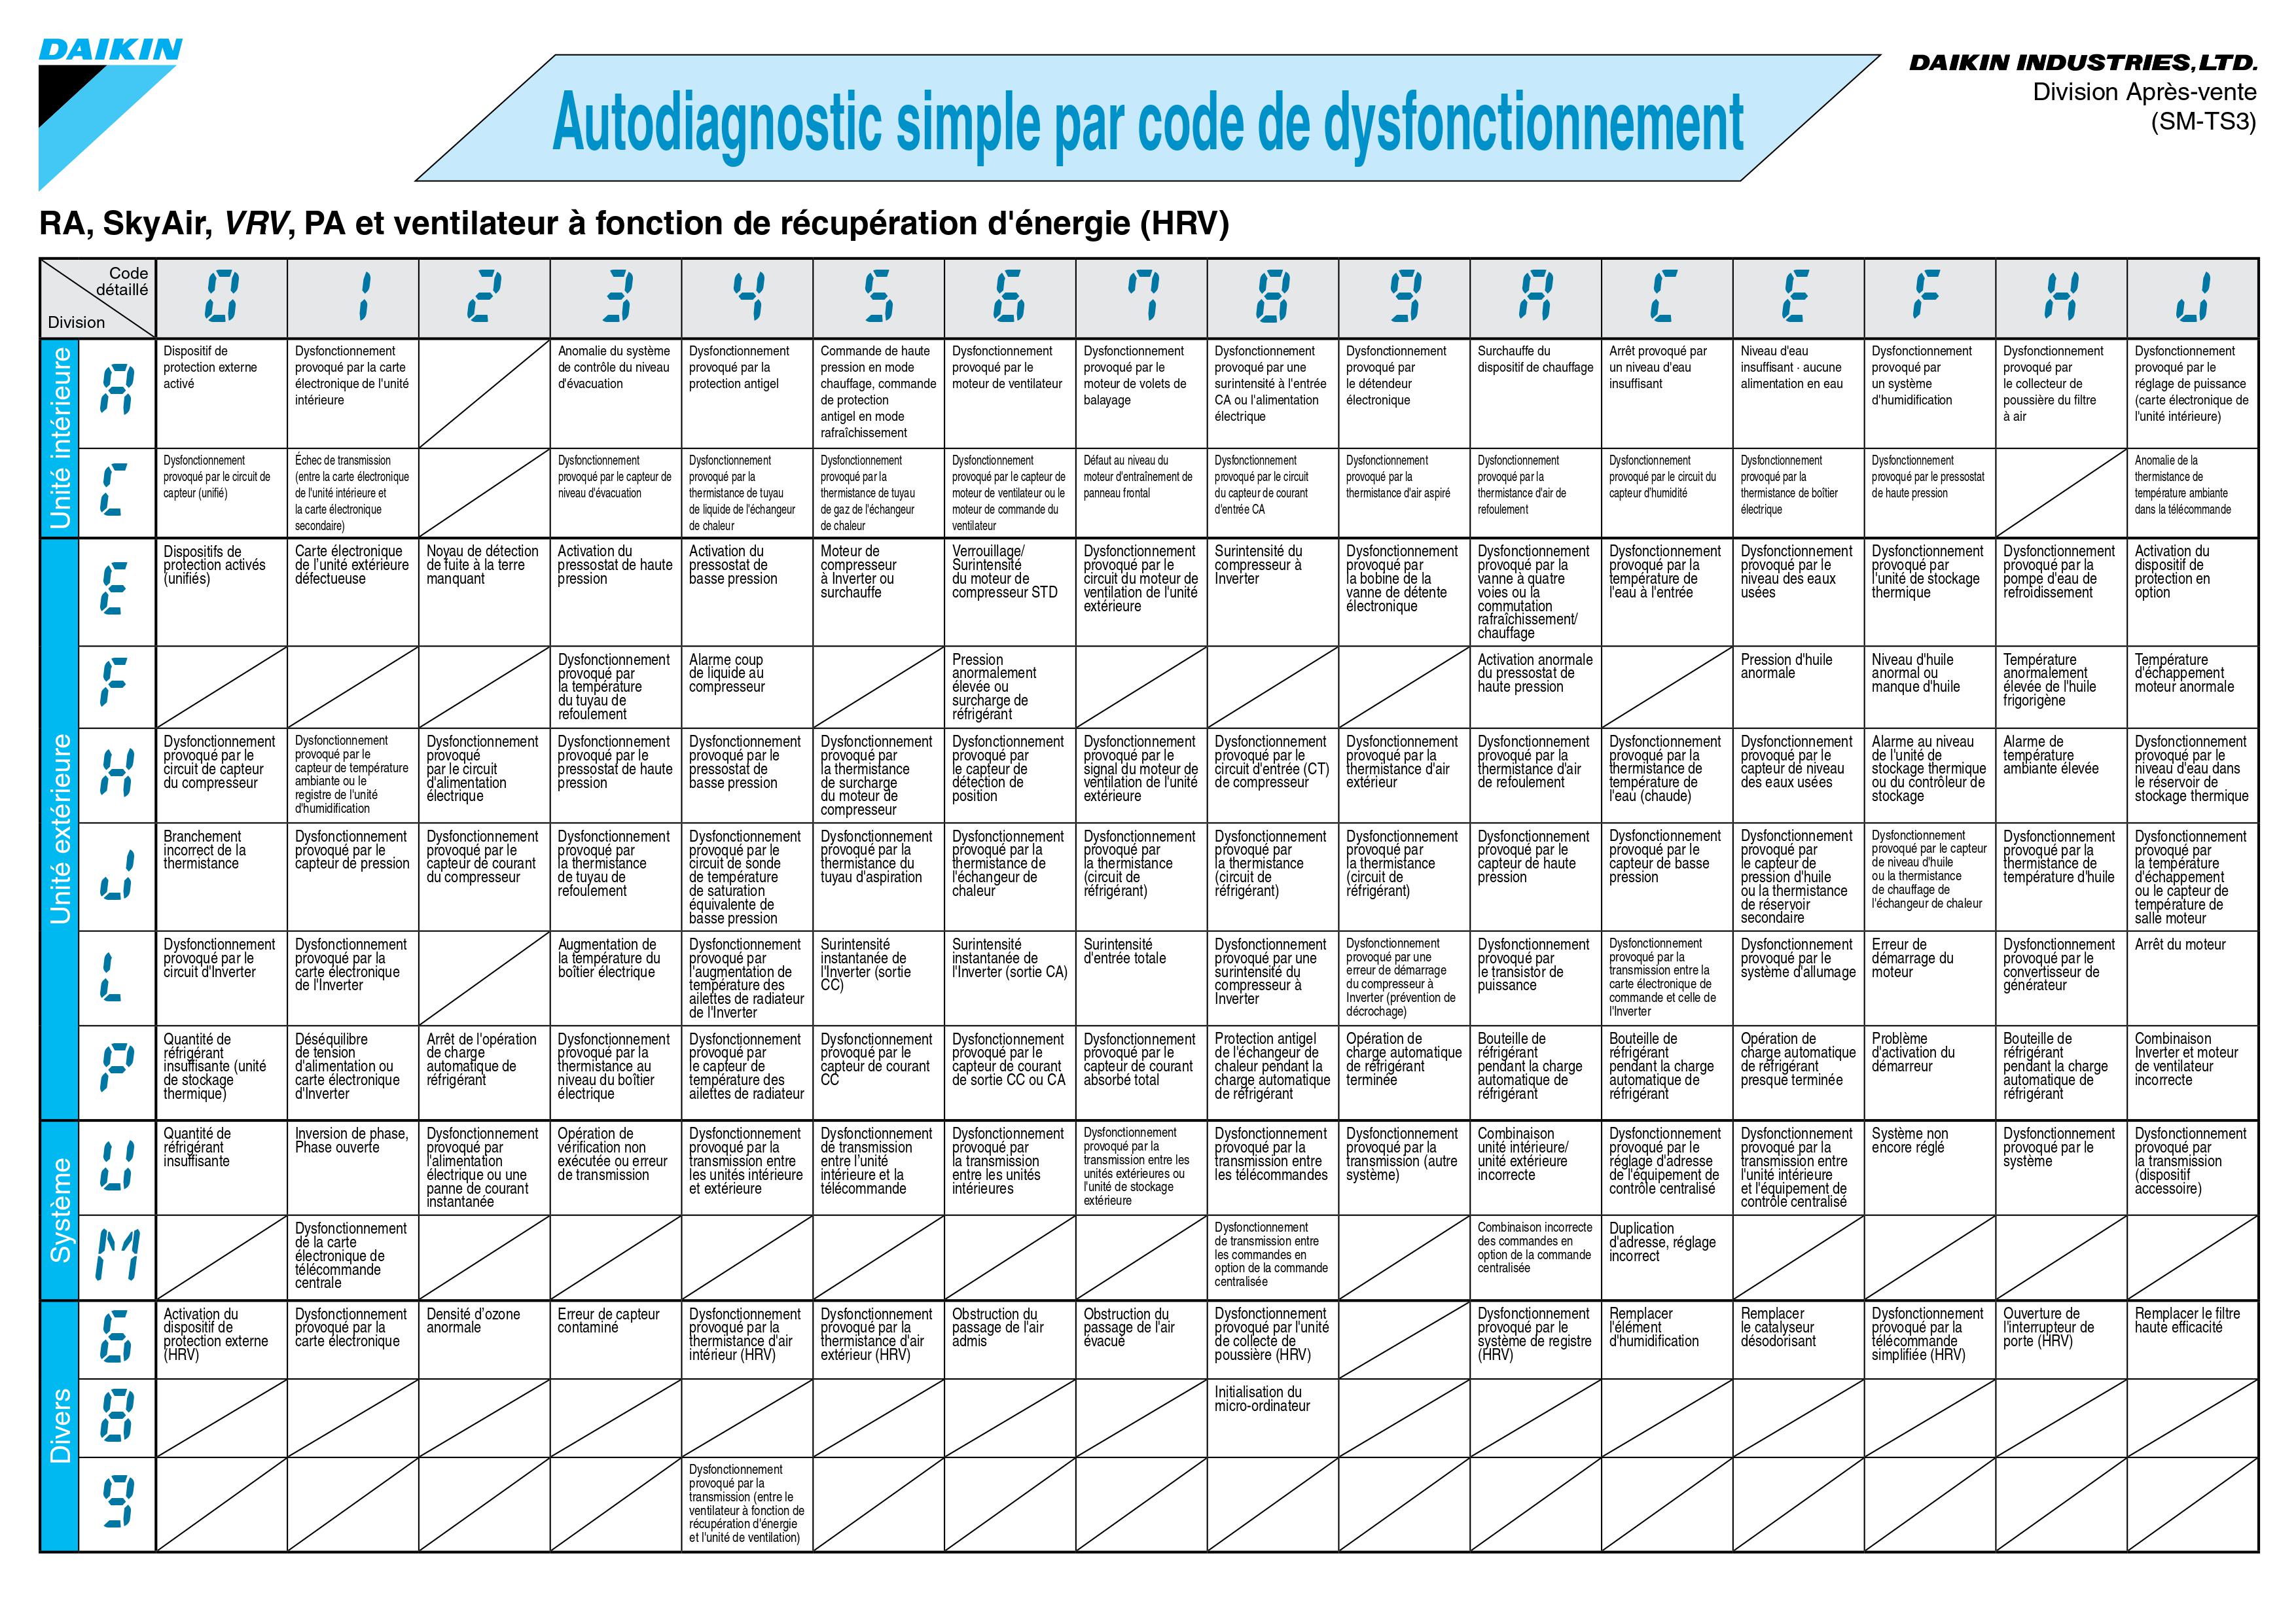 Autodiagnostic simple par code